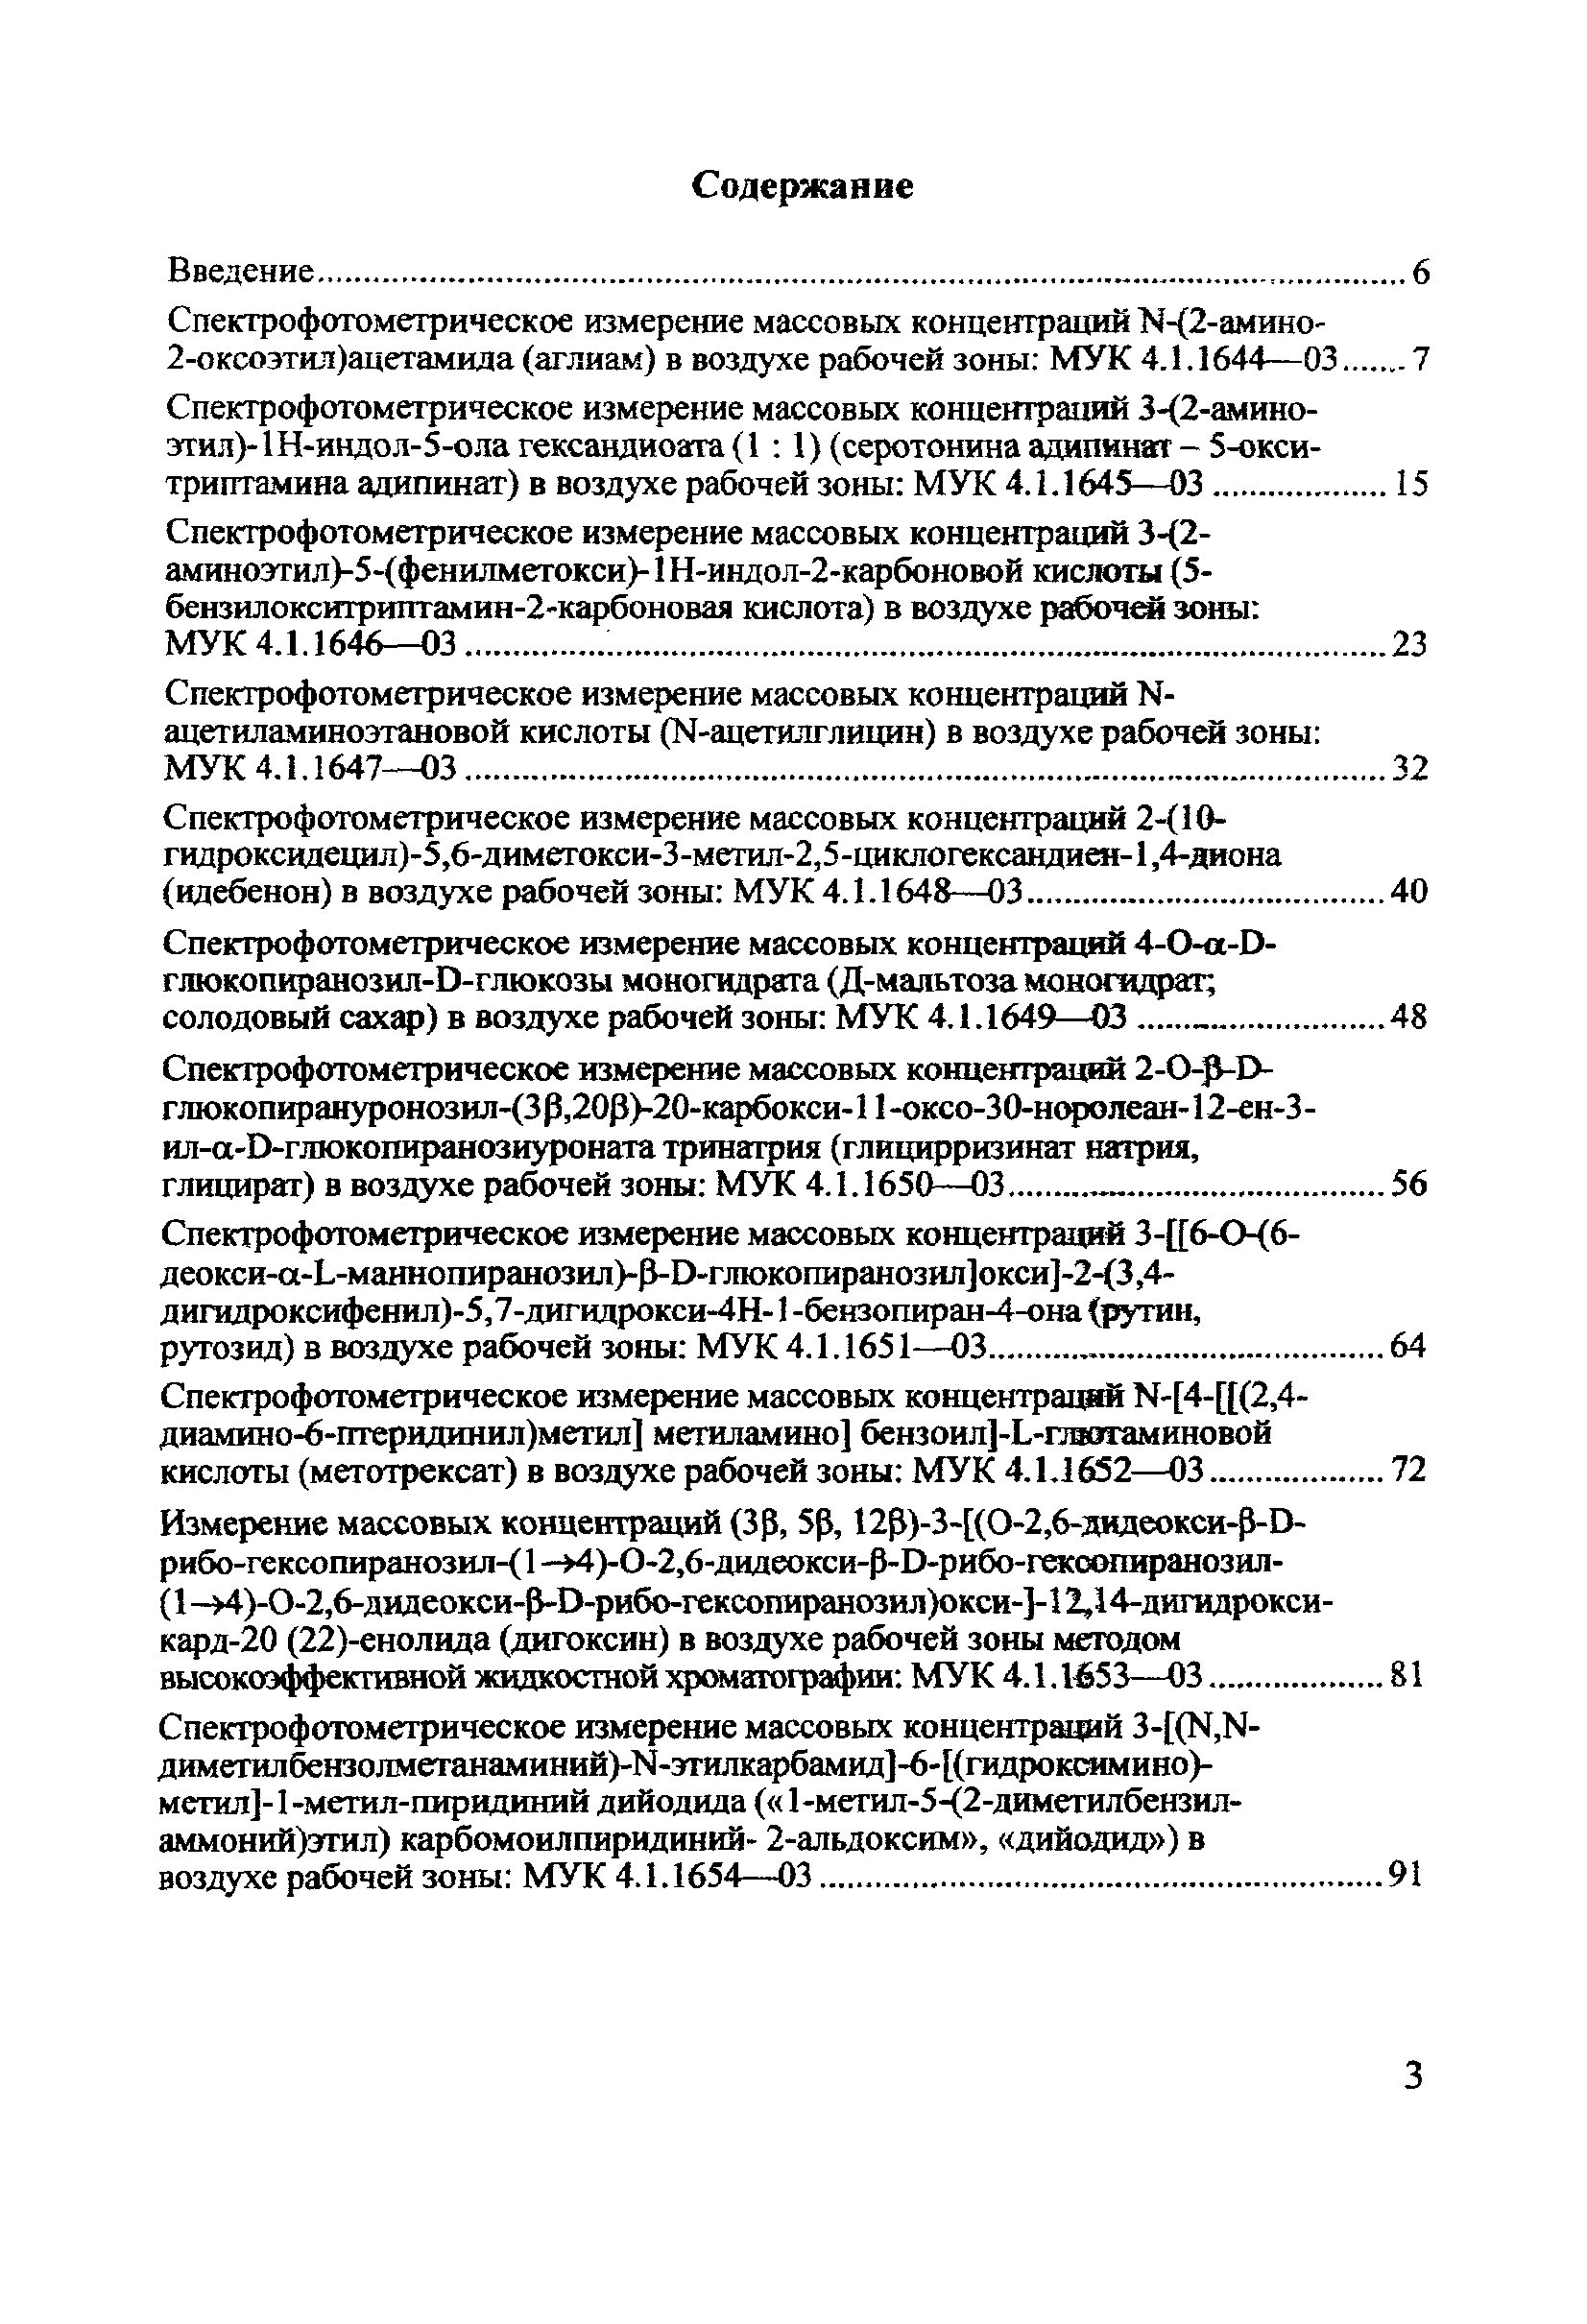 МУК 4.1.1664-03